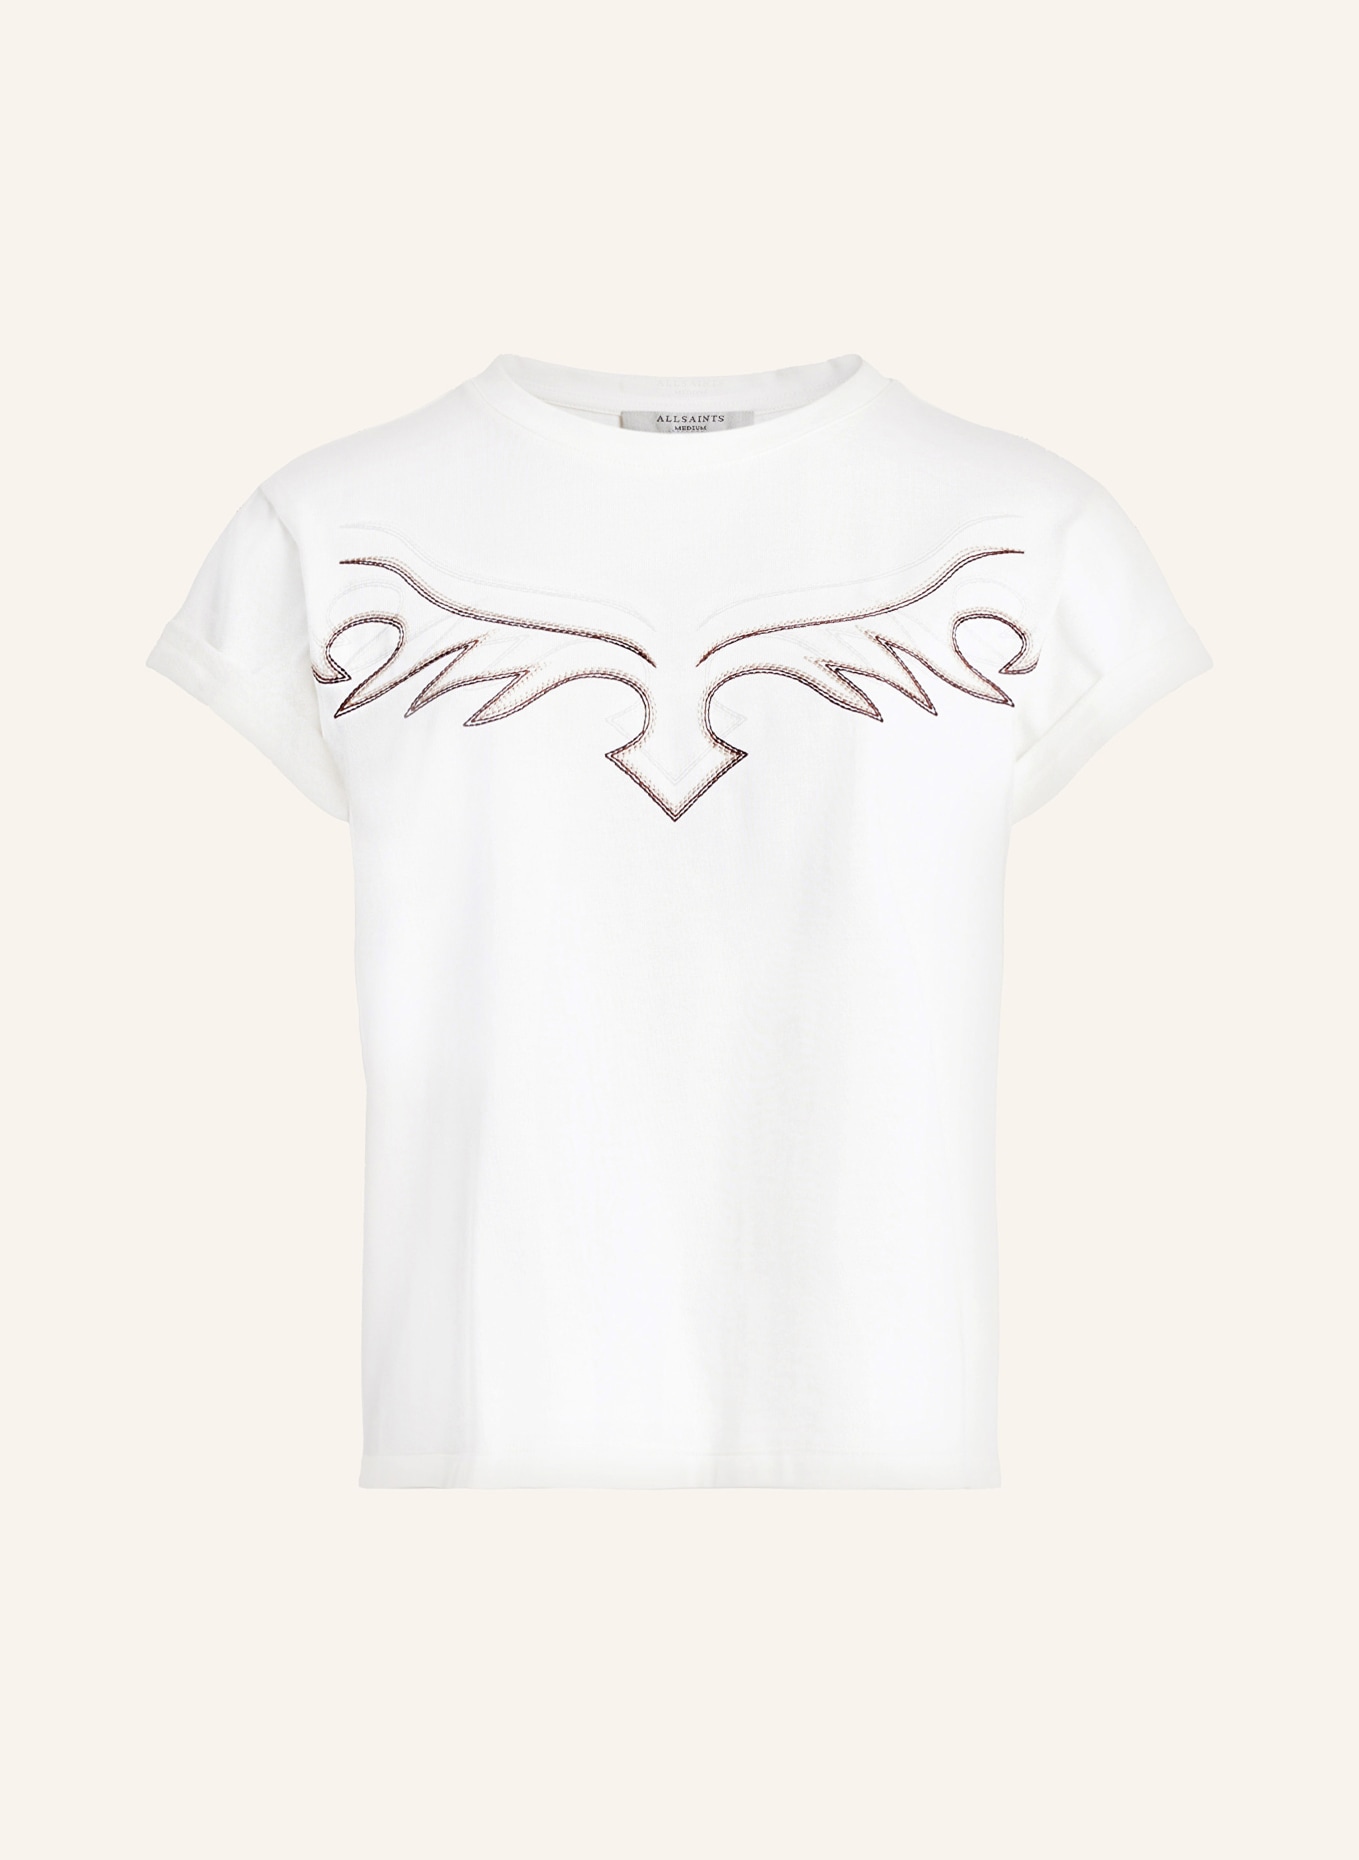 ALLSAINTS T-shirt RANDAL ANNA, Color: WHITE (Image 1)